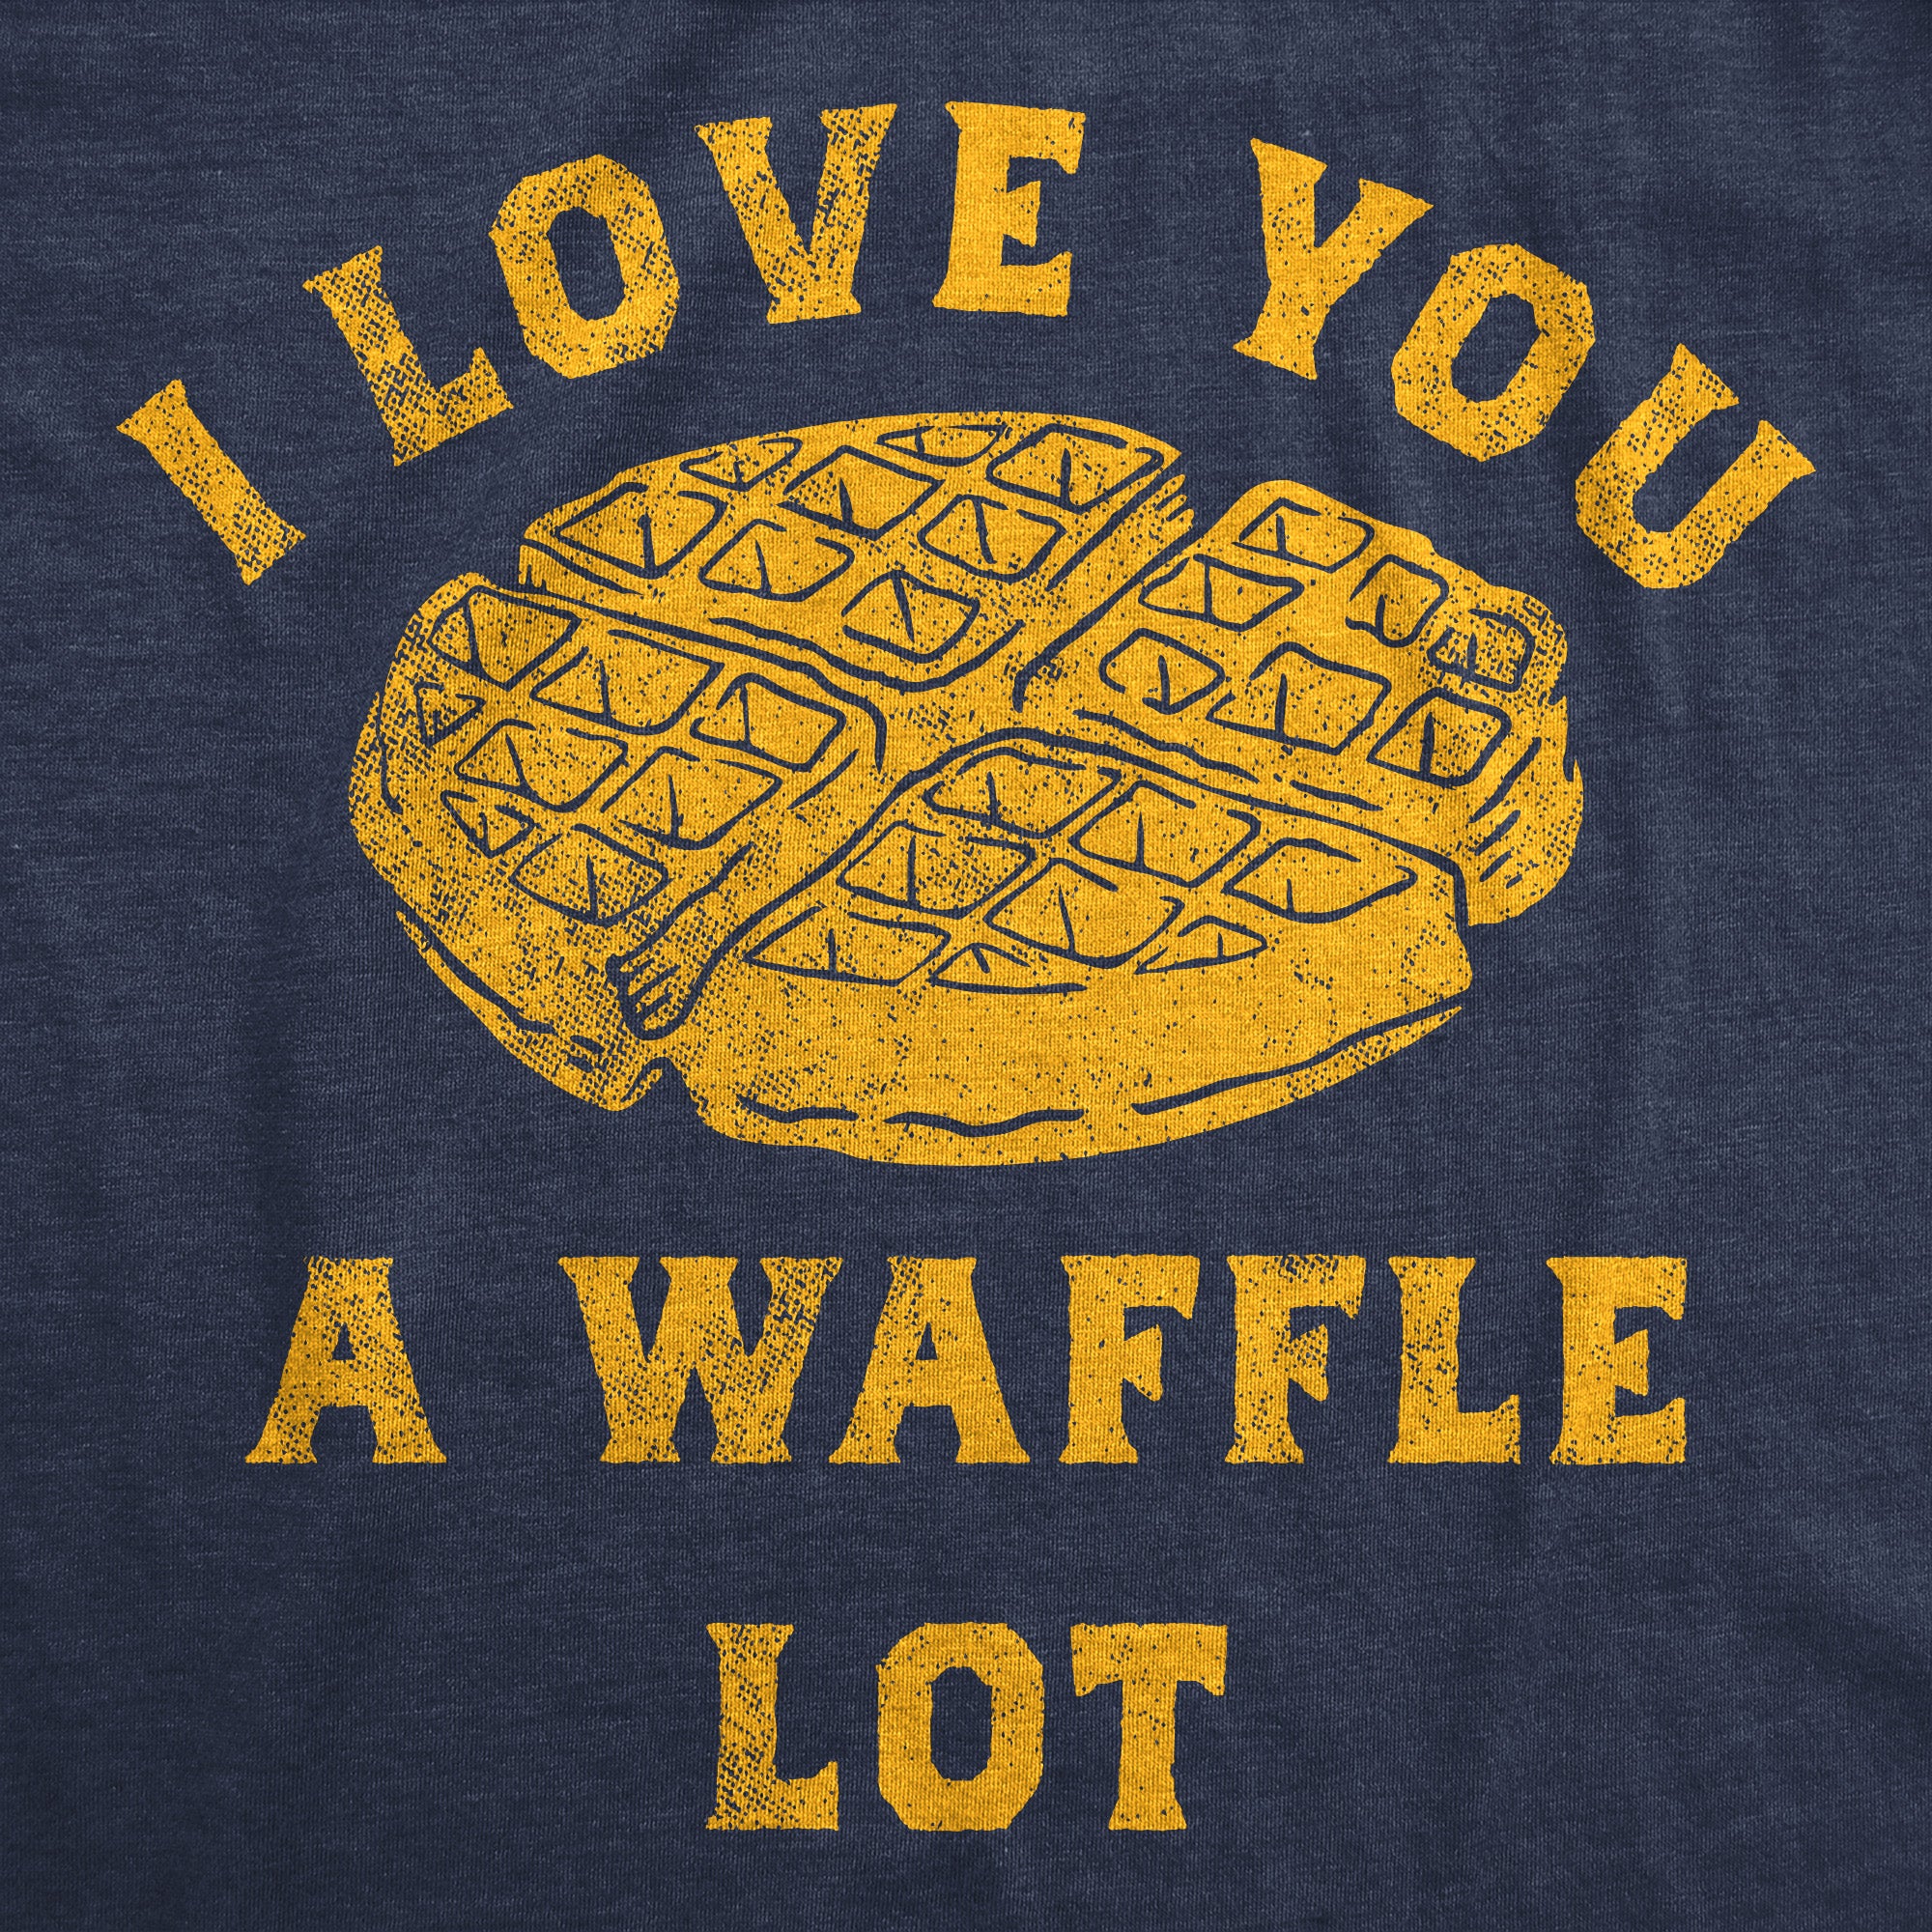 Funny Heather Navy - I Love You A Waffle Lot I Love You A Waffle Lot Mens T Shirt Nerdy Food Tee